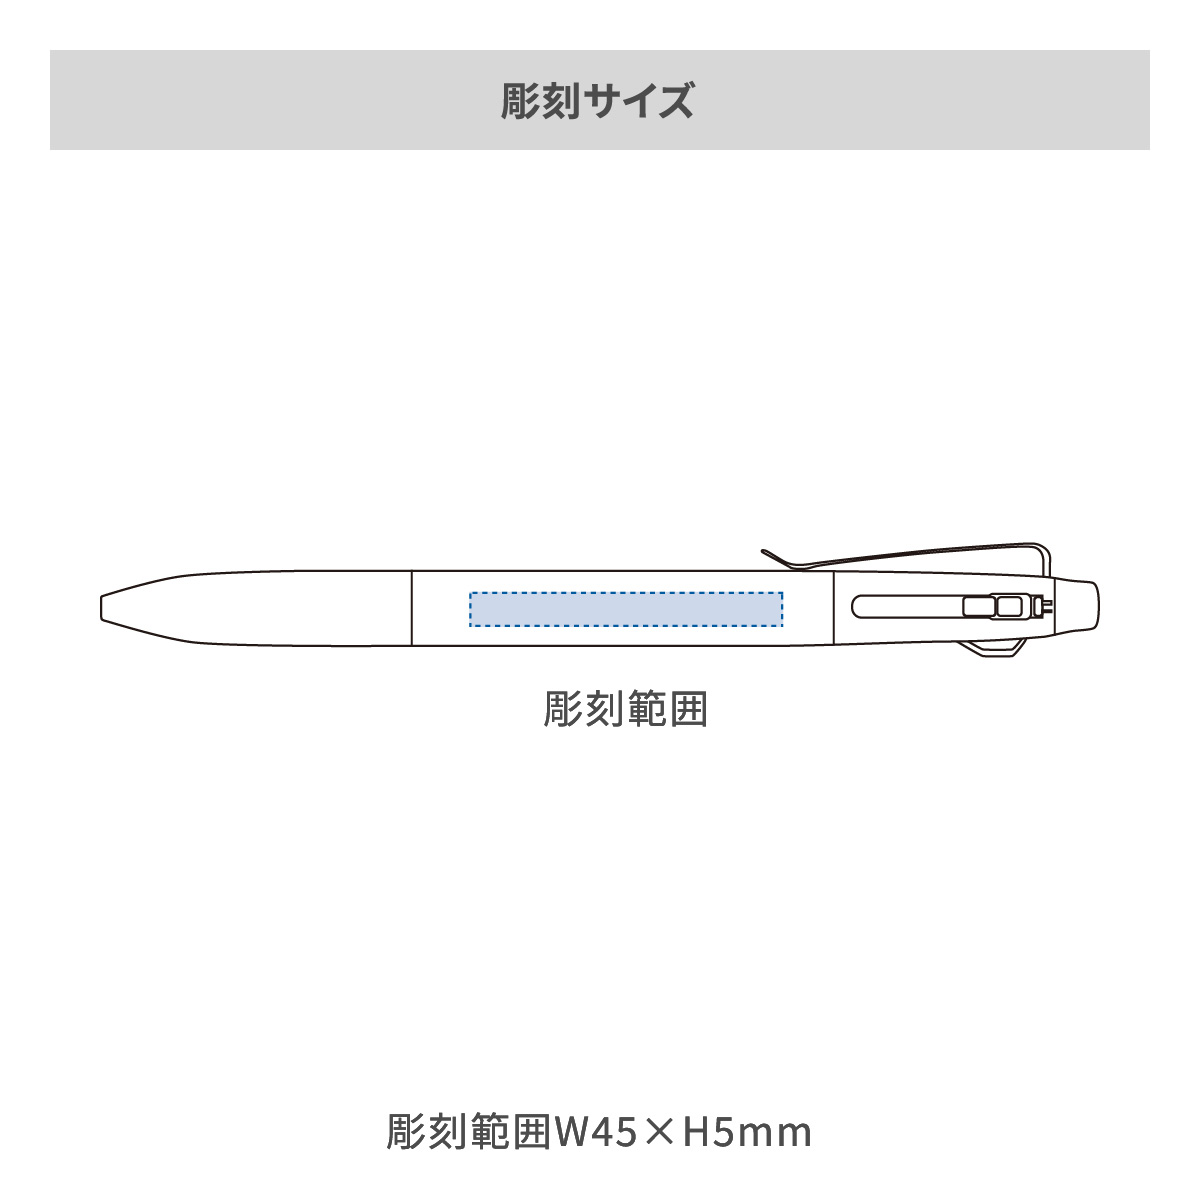 【短納期】三菱鉛筆 ジェットストリーム プライム 3色ボールペン 0.5mmの名入れ範囲